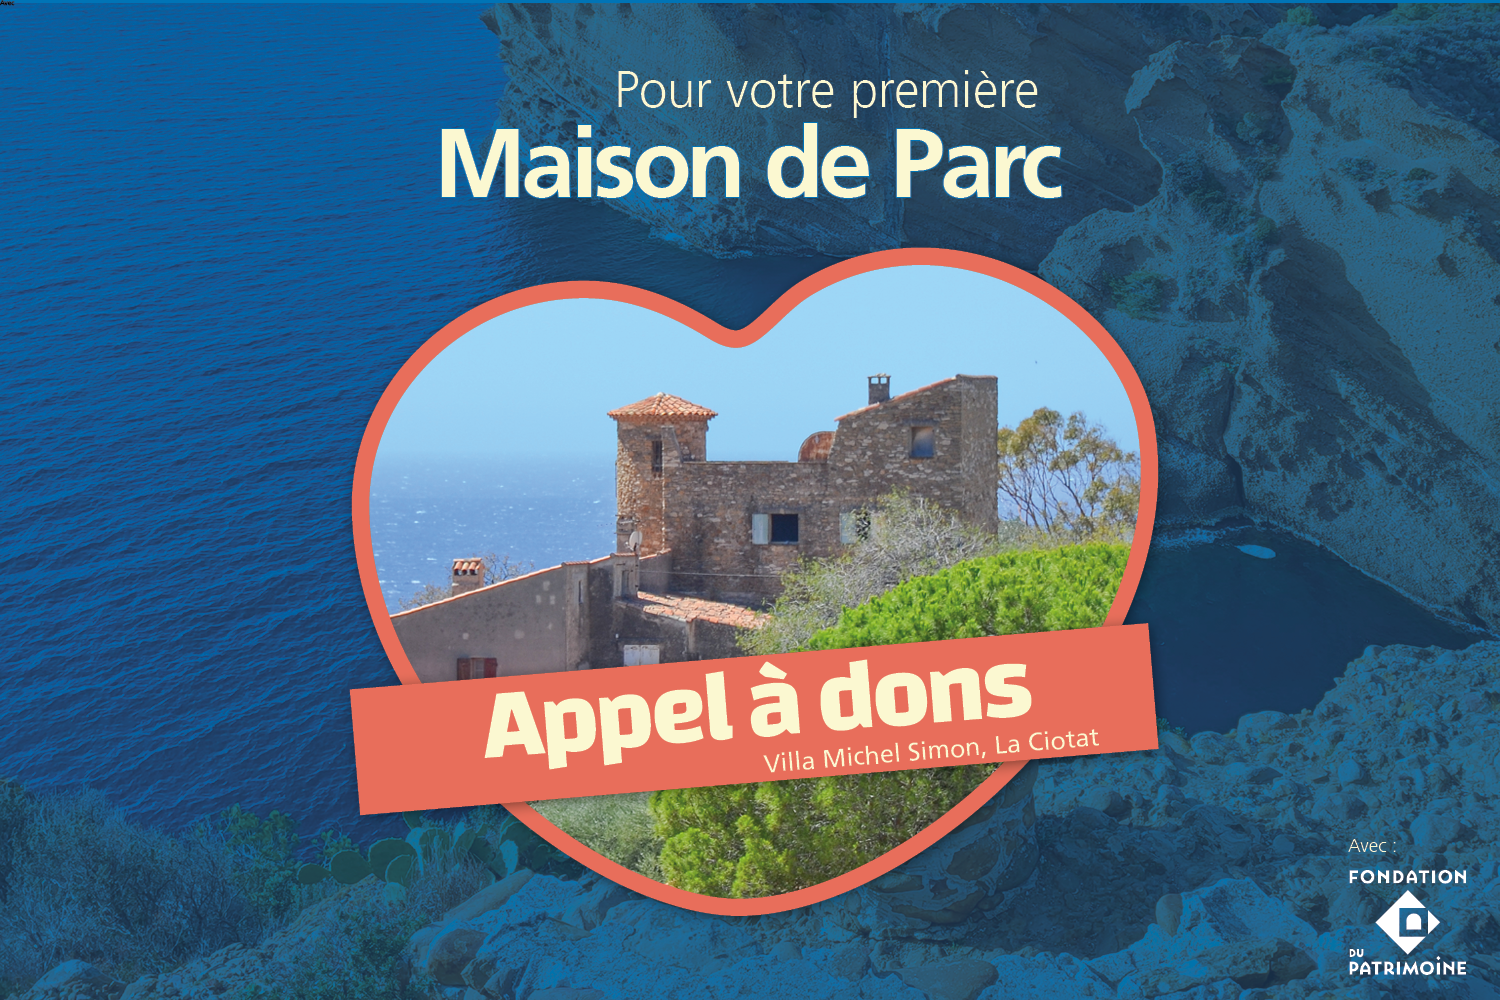 La Villa Michel Simon devient la 1ere Maison du Parc national des Calanques. Appel à dons !